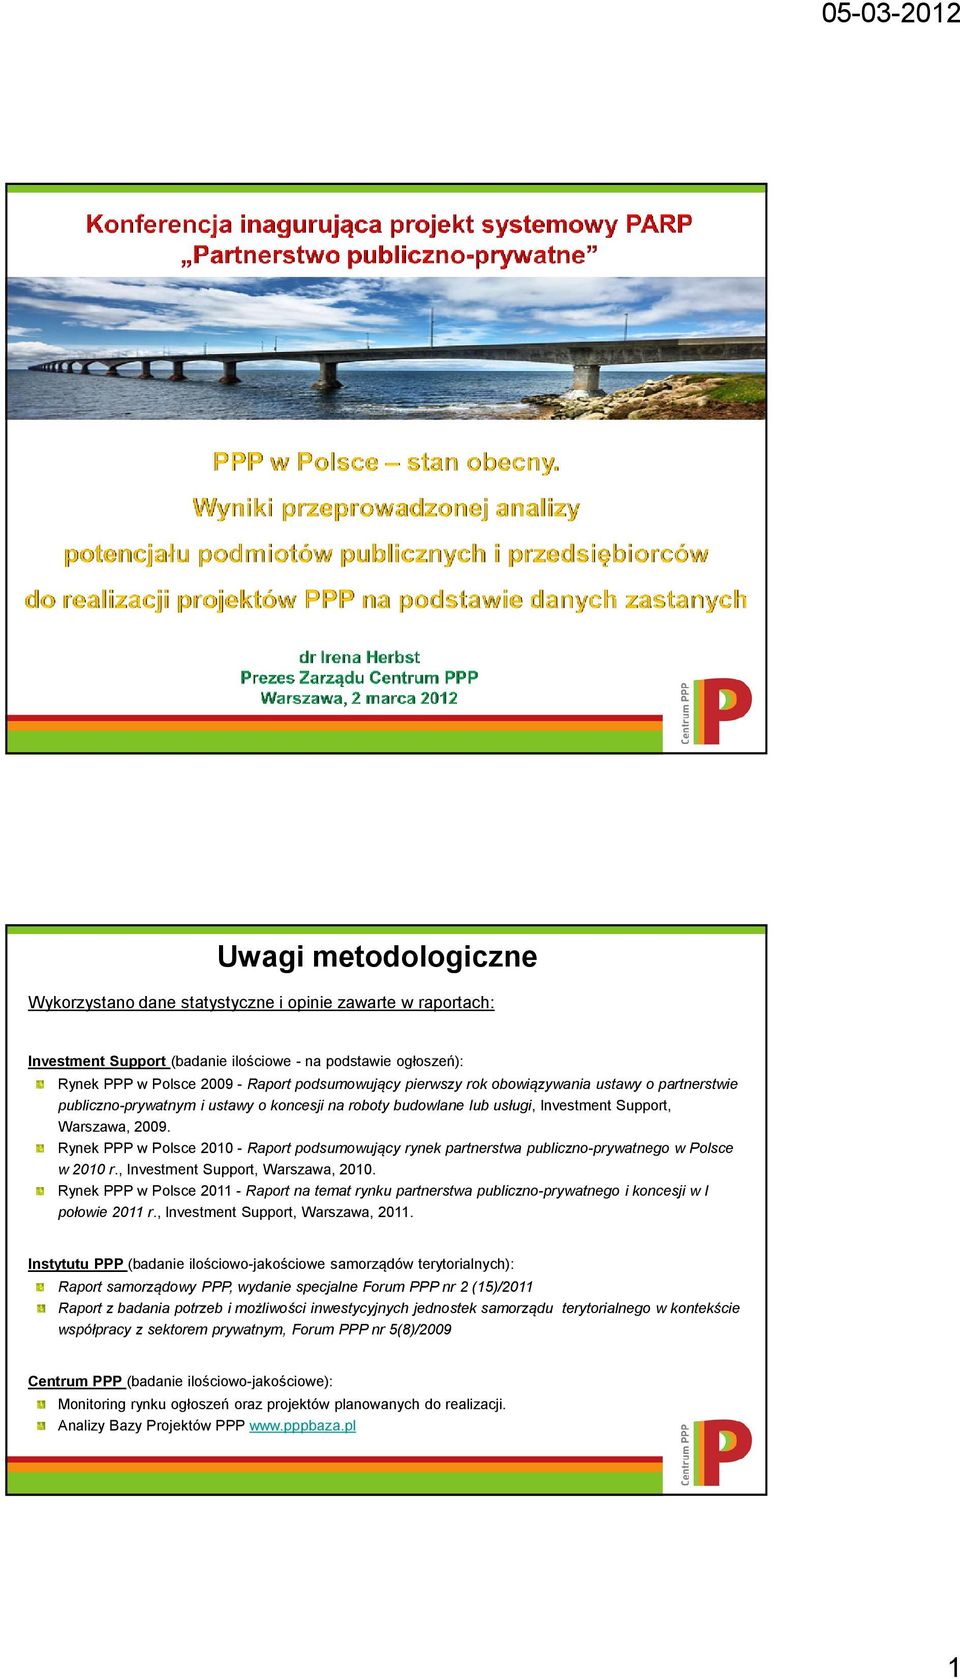 Rynek PPP w Polsce 2010 - Raport podsumowujący rynek partnerstwa publiczno-prywatnego w Polsce w 2010 r., Investment Support, Warszawa, 2010.